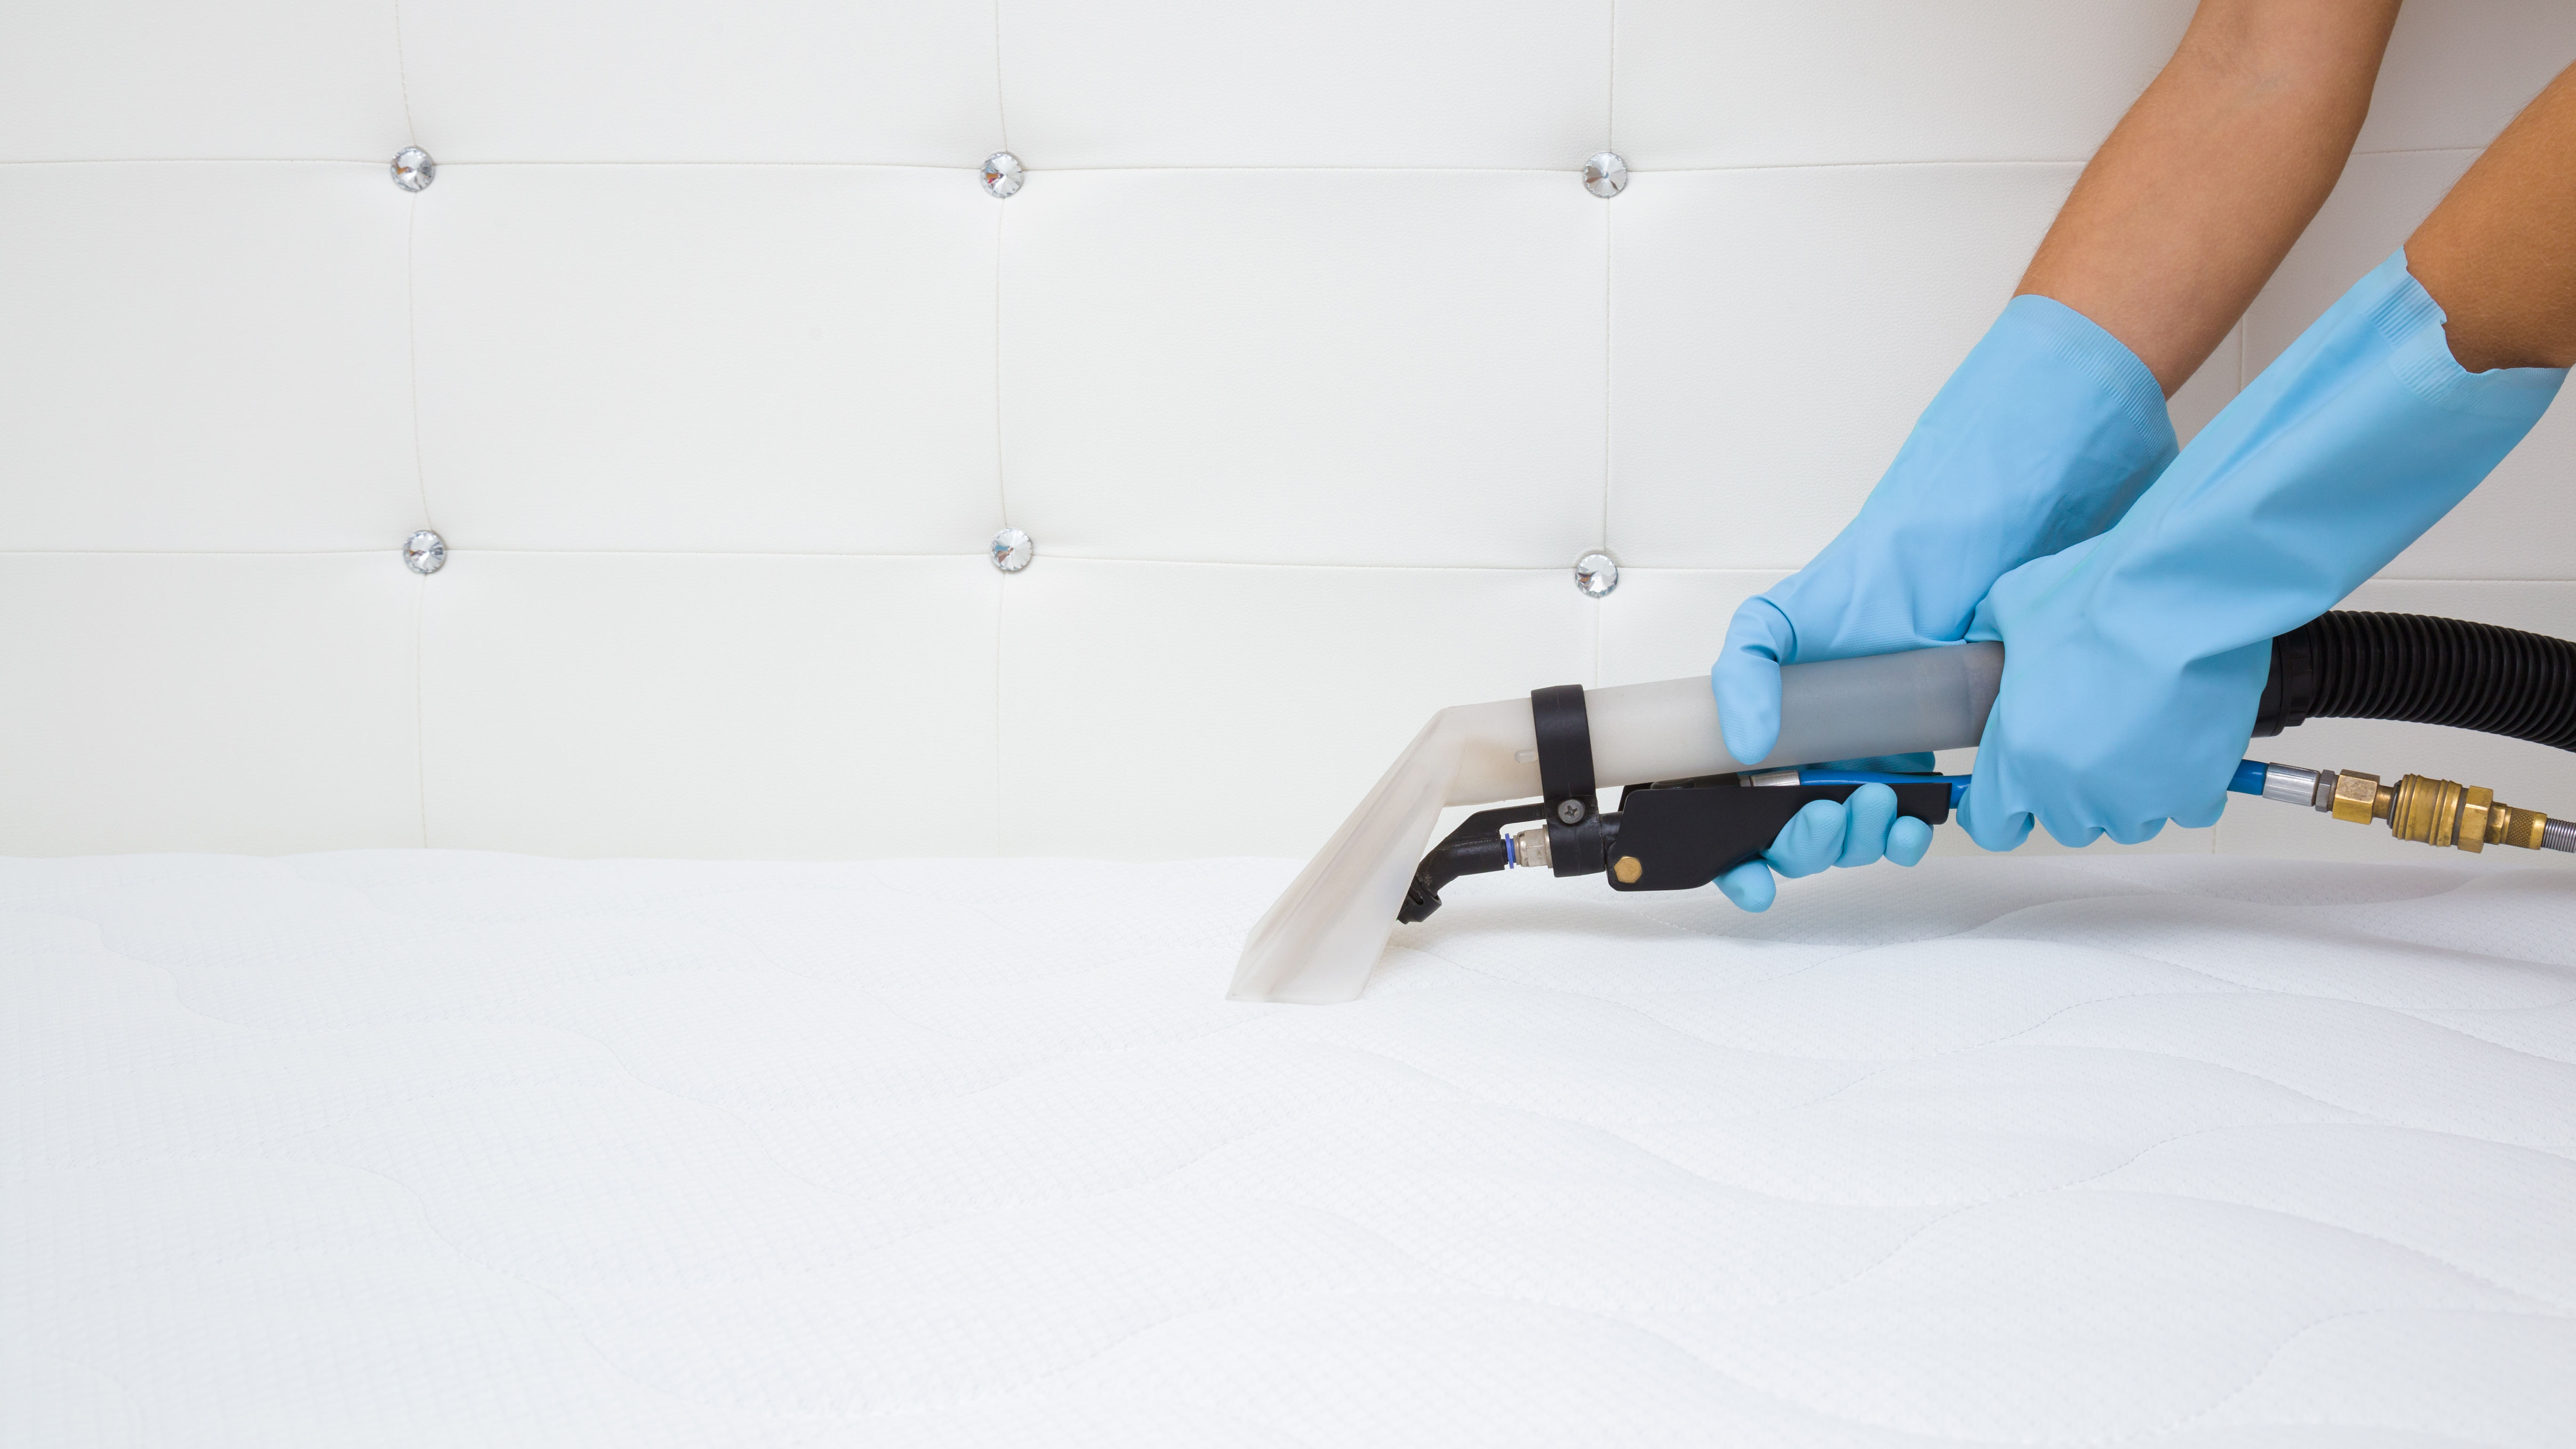 Eine Person mit blauen Handschuhen saugt die Oberseite einer weißen Matratze ab